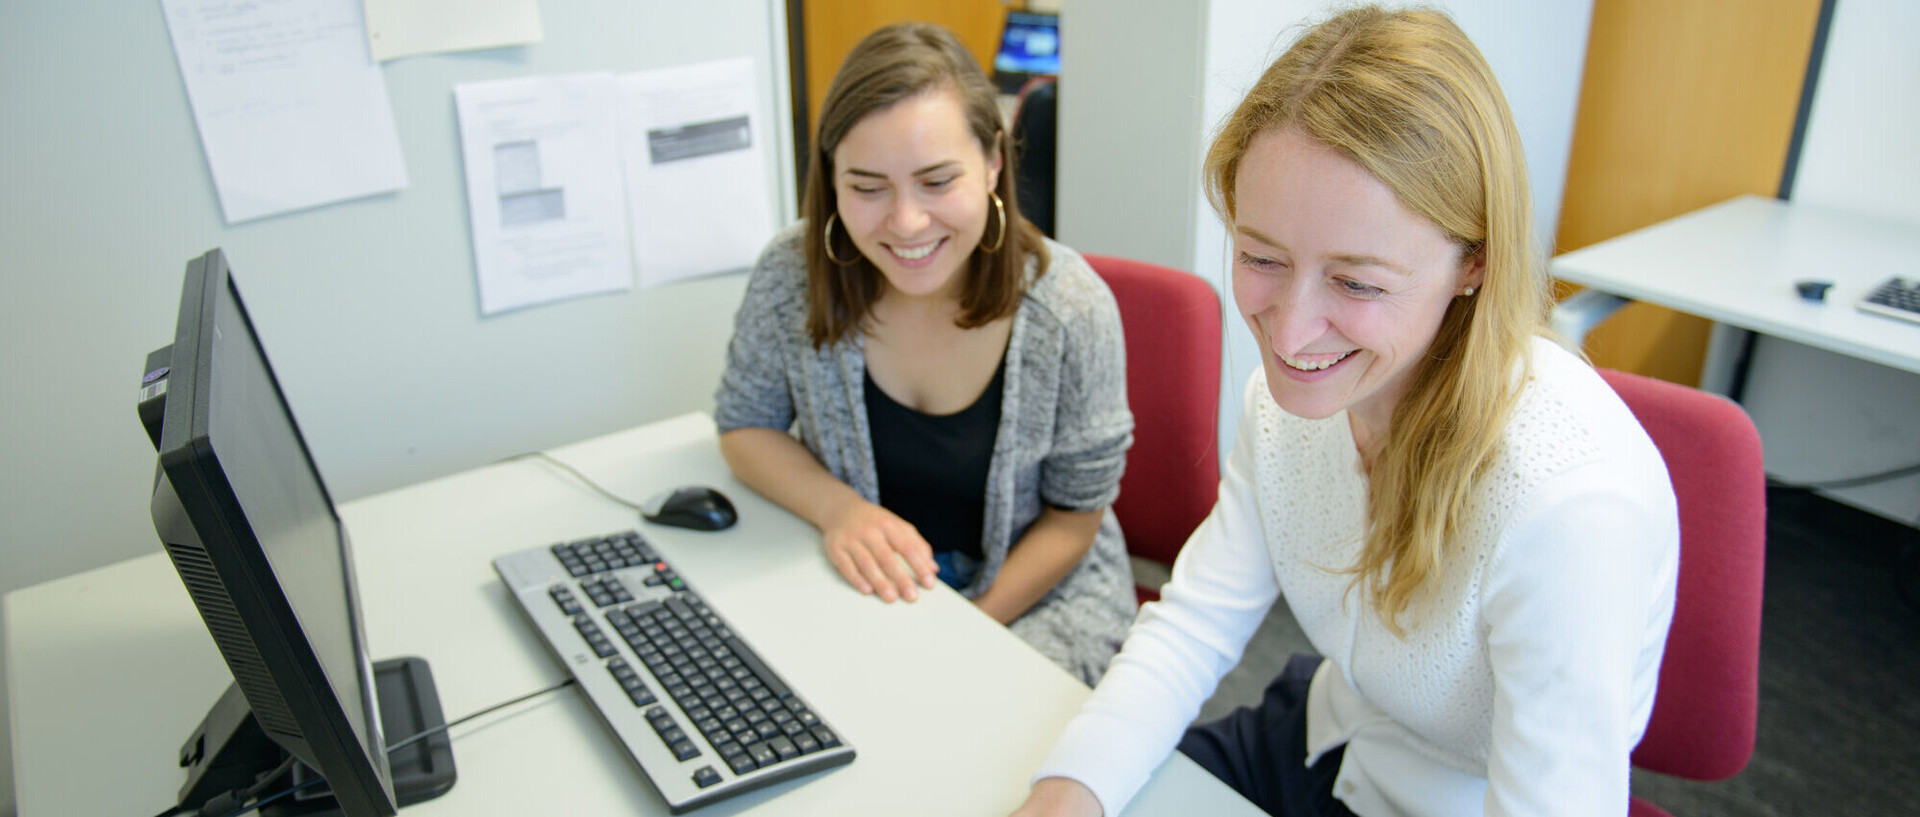 Zwei Studentinnen sitzen lachend an einem Tisch nebeneinander vor einem Laptop und einem Bildschirm mit Tastatur